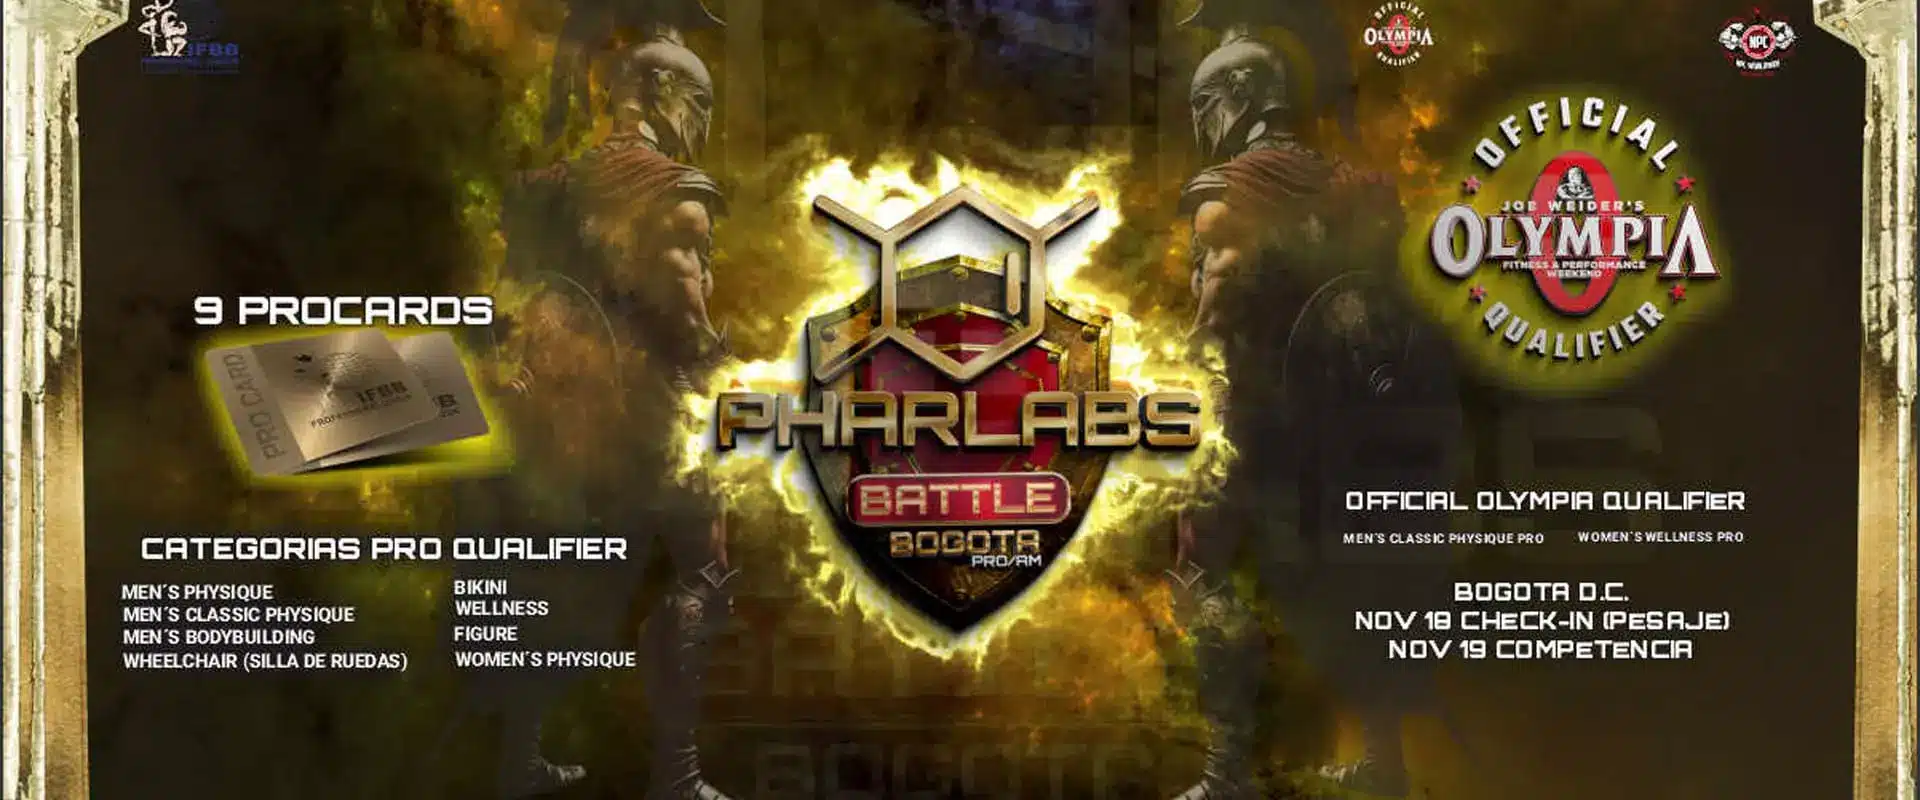 Pharlabs Battle Bogota Pro 2023